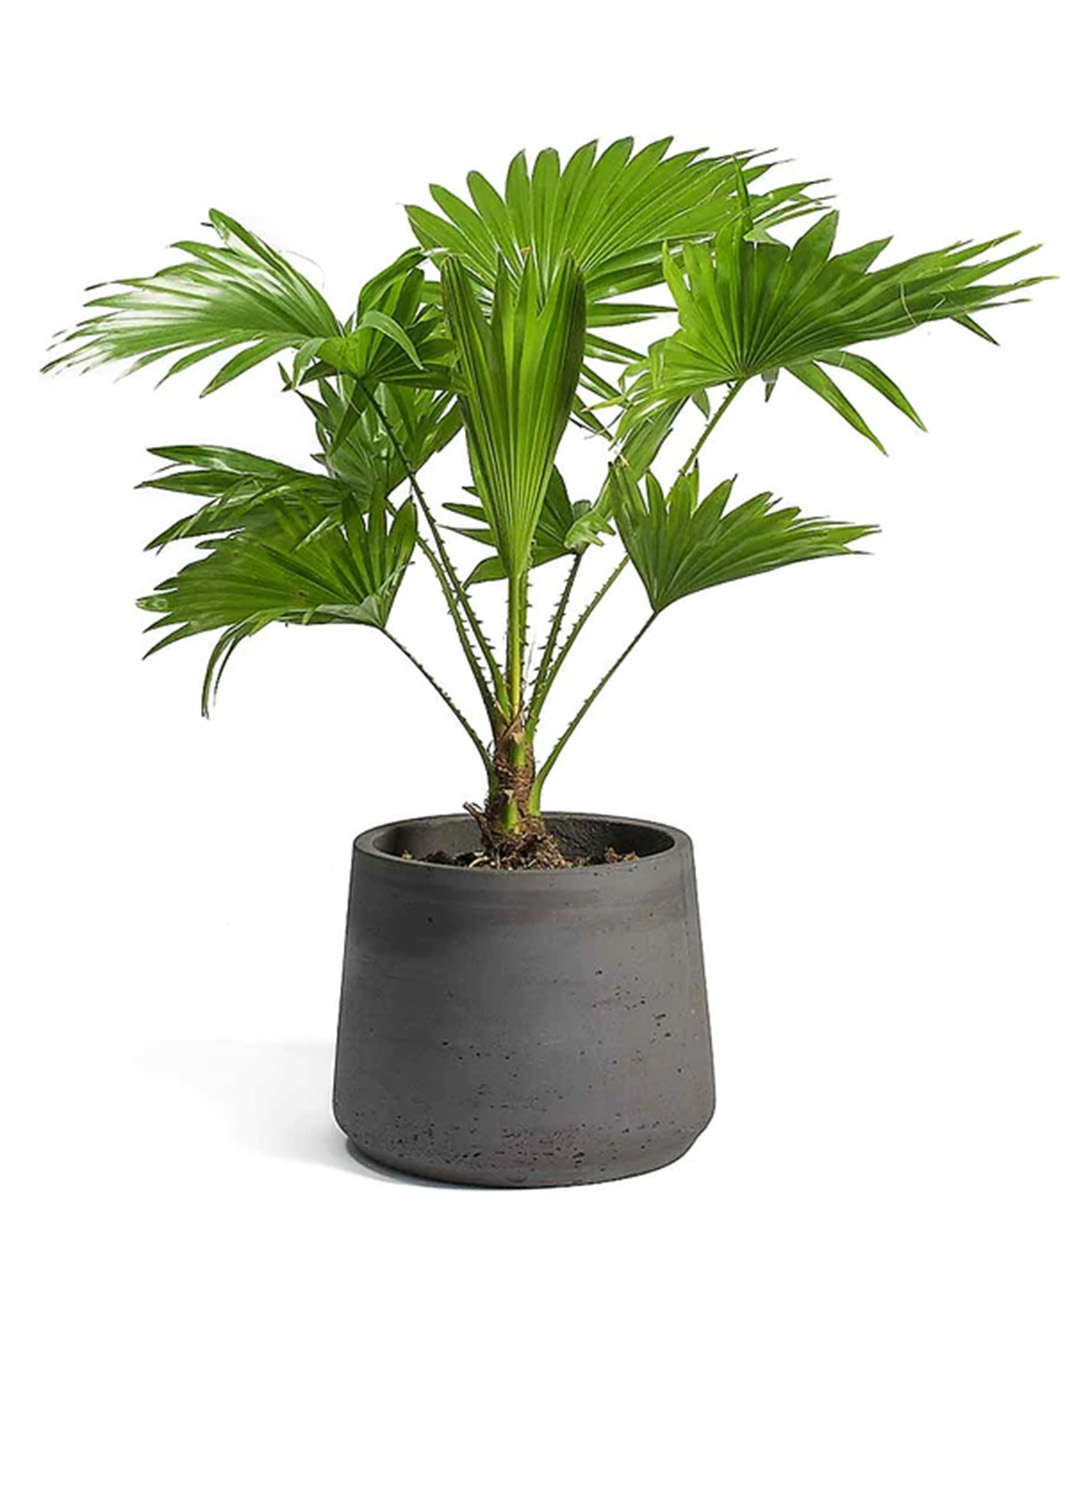 Livistona Palm, Footstool Palm, Table Palm, Fan Palm {1.5m/1.6m}